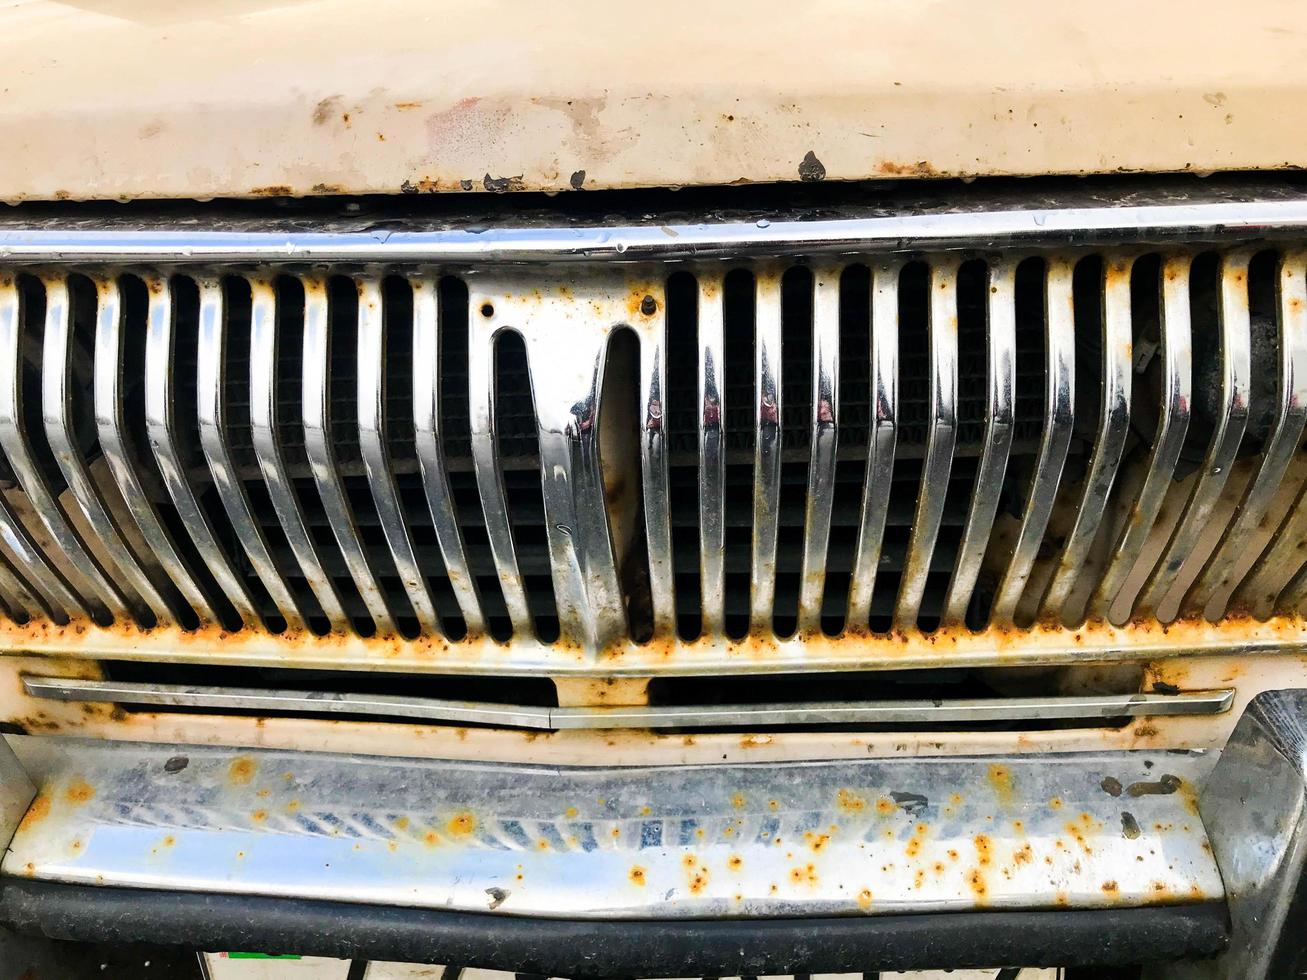 um velho retro vintage hipster oxidado oxidado oxidado grade de radiador de prata metálica cromada na frente do capô retrô de um carro de passageiros americano branco antiquana dos anos 60, 70, 80, 90, 2000 foto